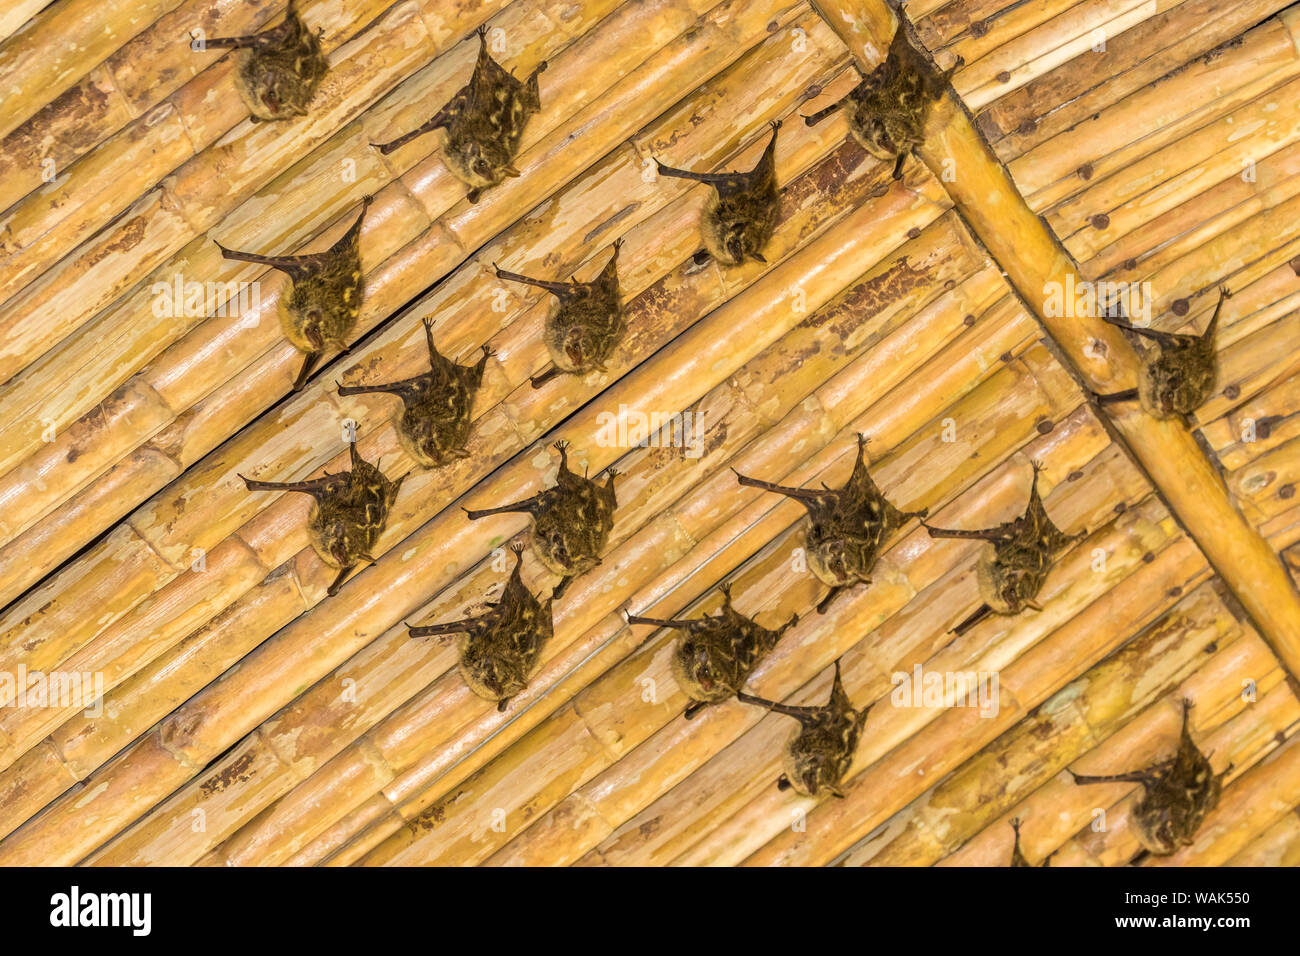 Le Costa Rica, la vallée de la rivière Sarapiqui. Les chauves-souris bec long se percher sur plafond en bambou. En tant que crédit : Cathy & Gordon Illg / Jaynes Gallery / DanitaDelimont.com Banque D'Images